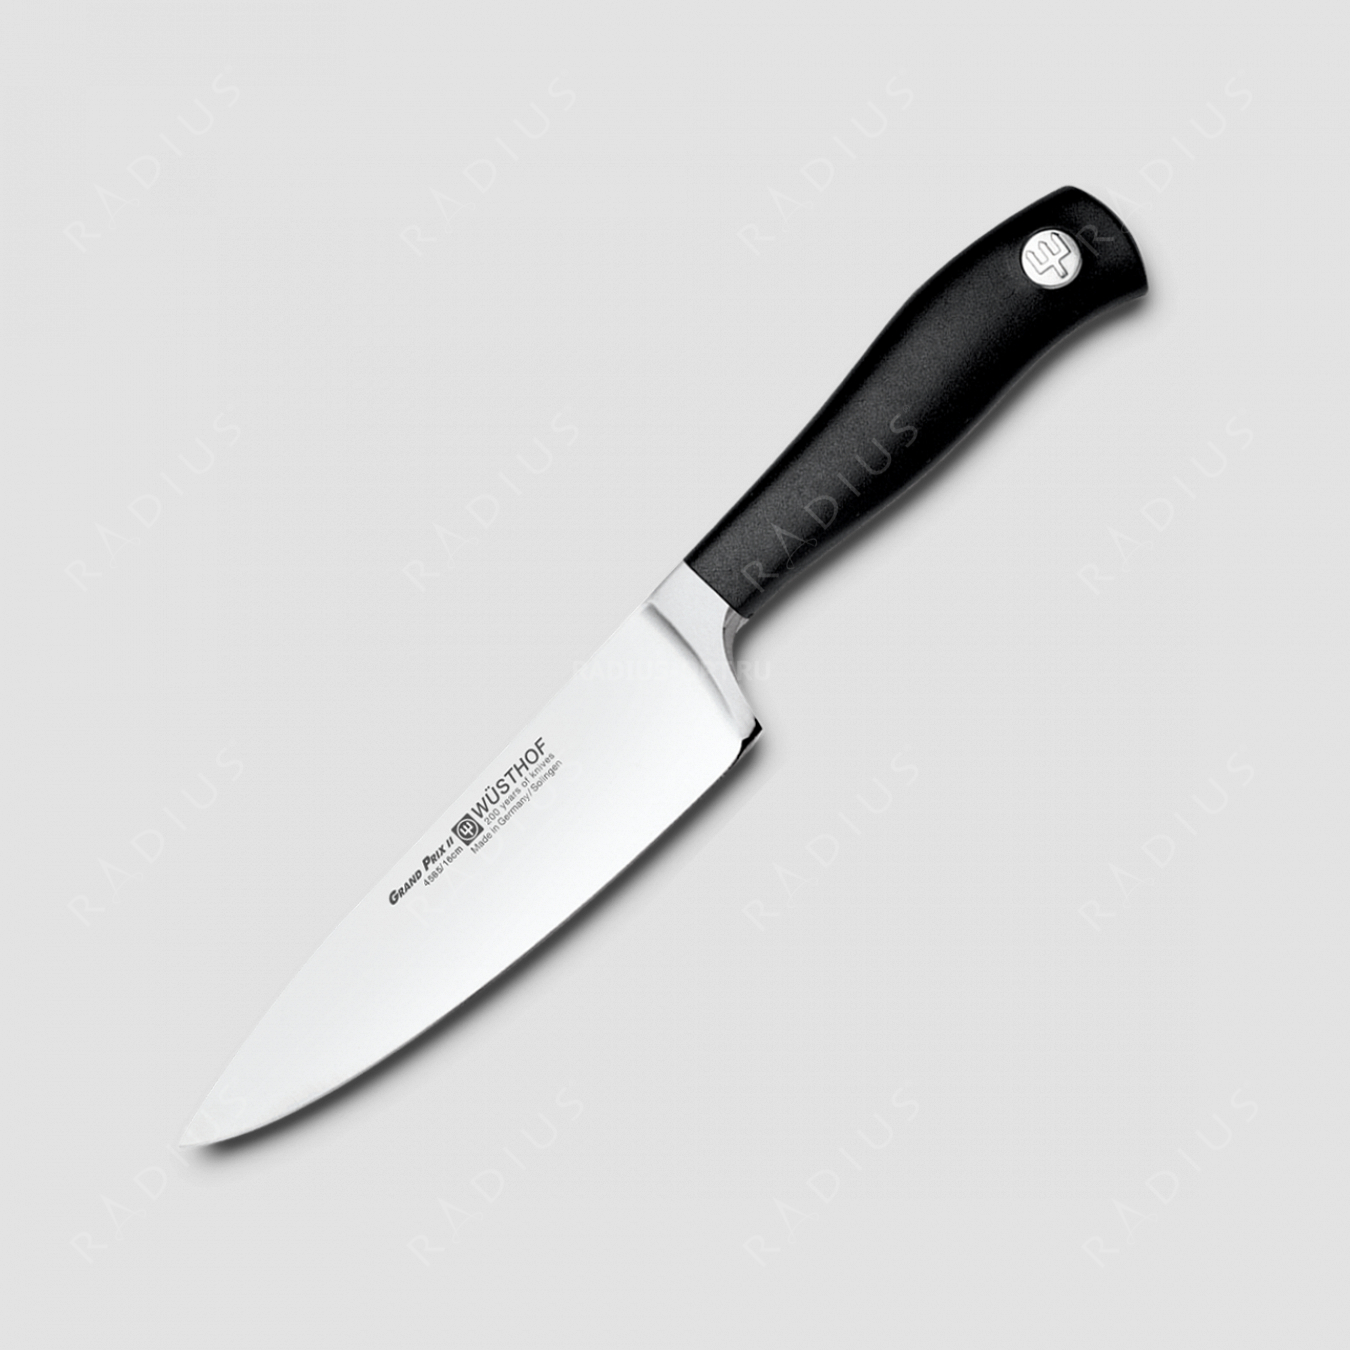 Профессиональный поварской кухонный нож 16 см, серия Grand Prix II, WUESTHOF, Золинген, Германия